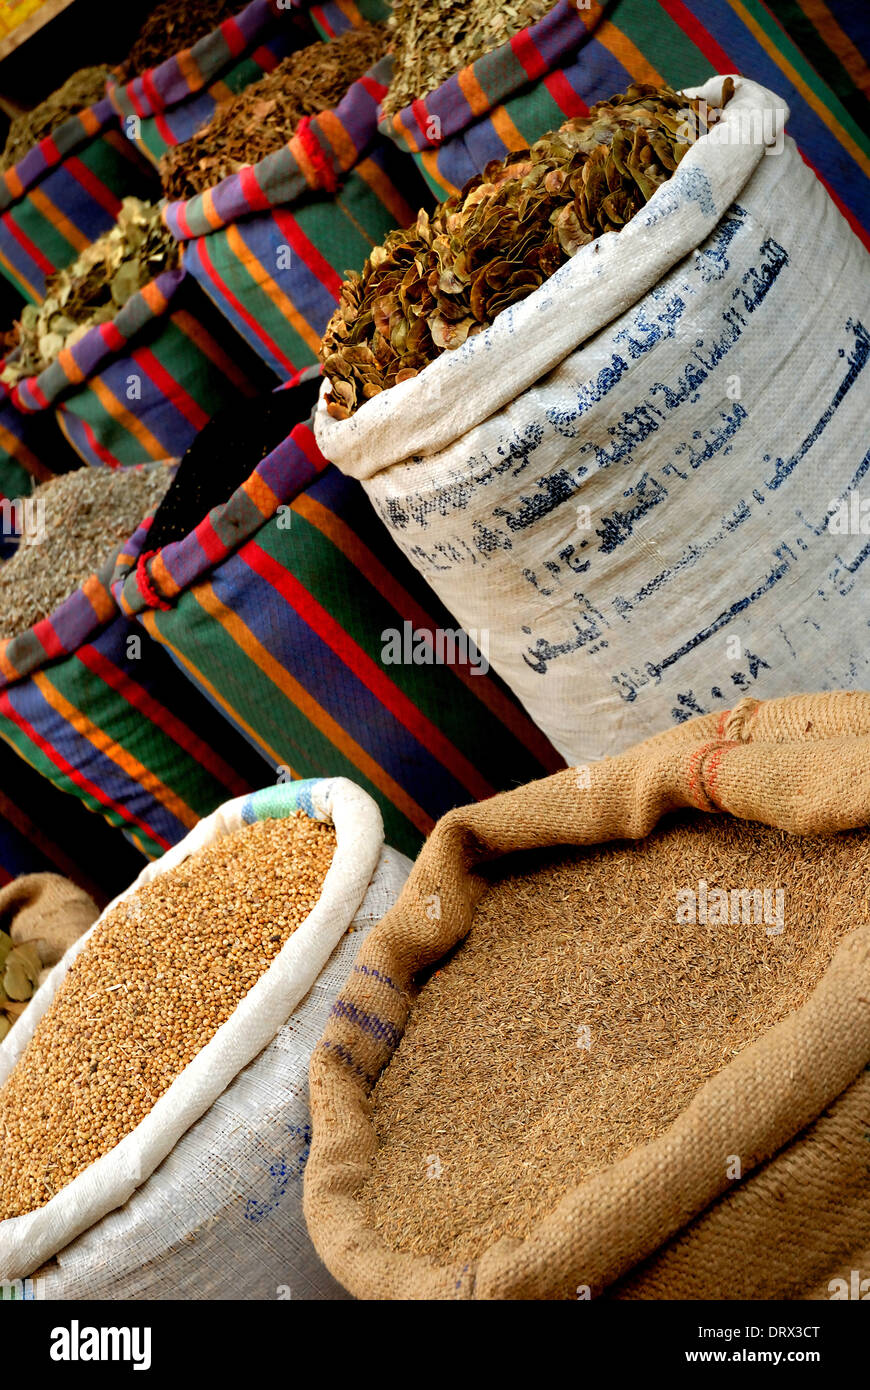 Spice market / Khan El Khalili Bazaar, Cairo Stock Photo